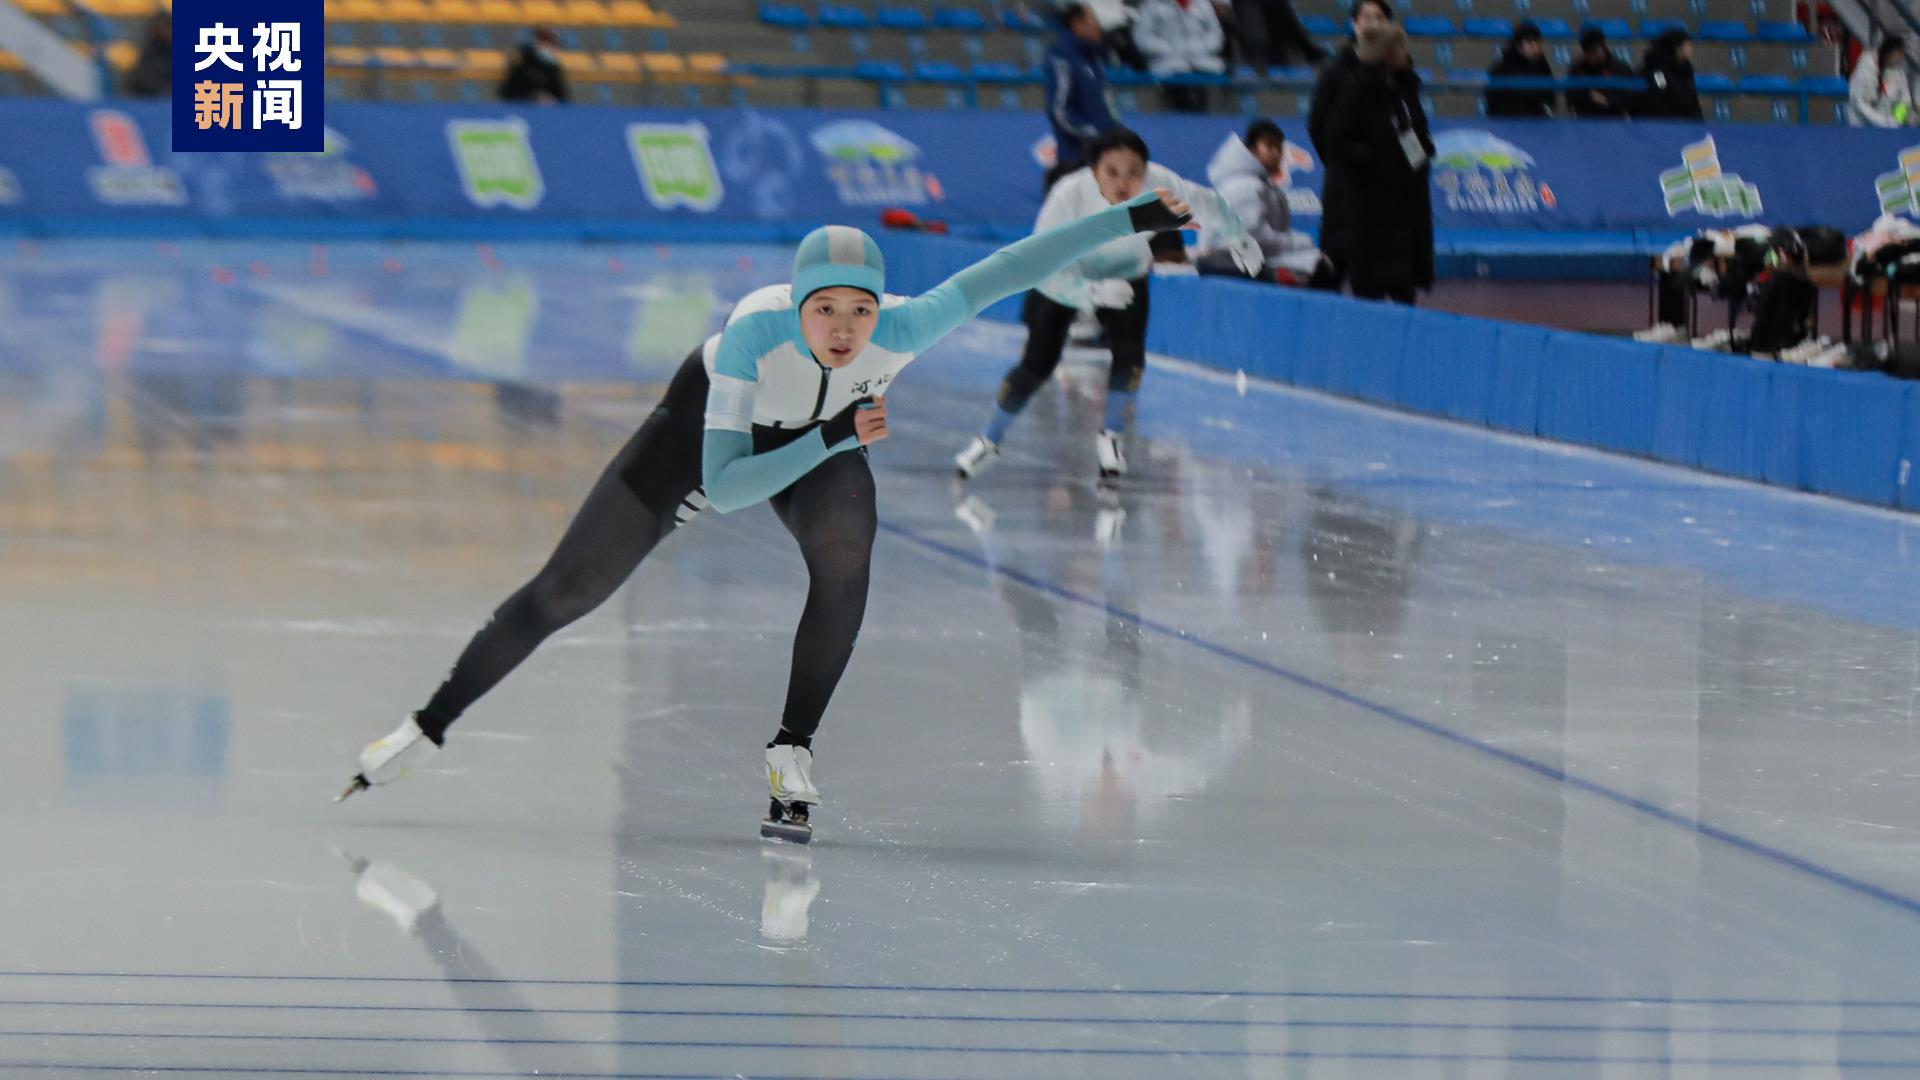 “十四冬”速度滑冰青年组比赛今日决出3金 河北队收获2金